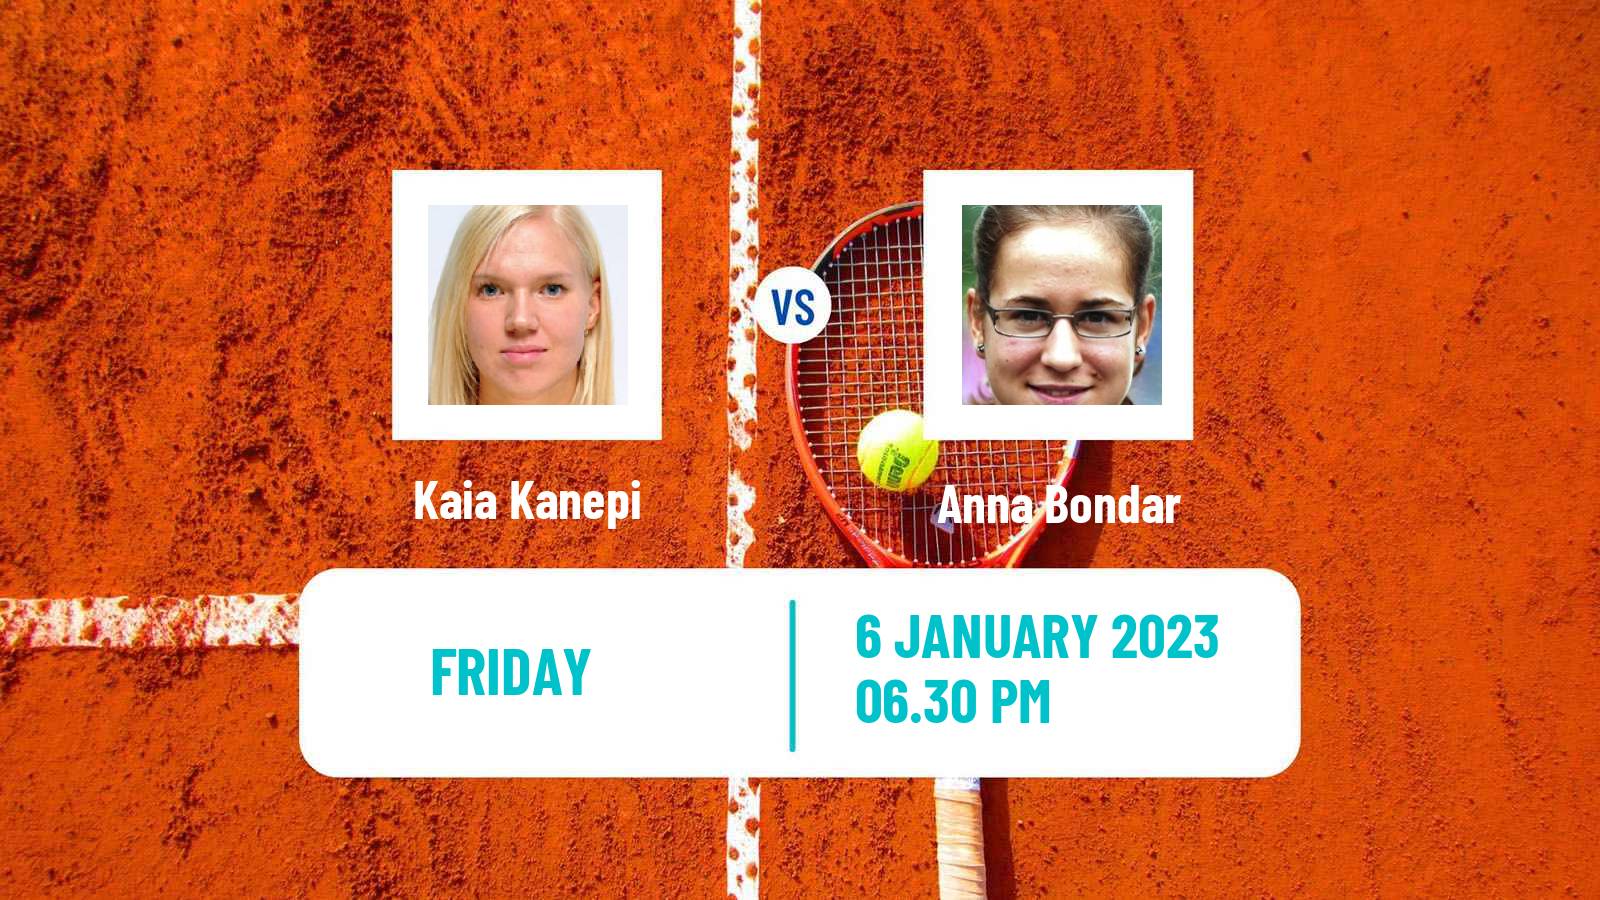 Tennis WTA Adelaide 2 Kaia Kanepi - Anna Bondar